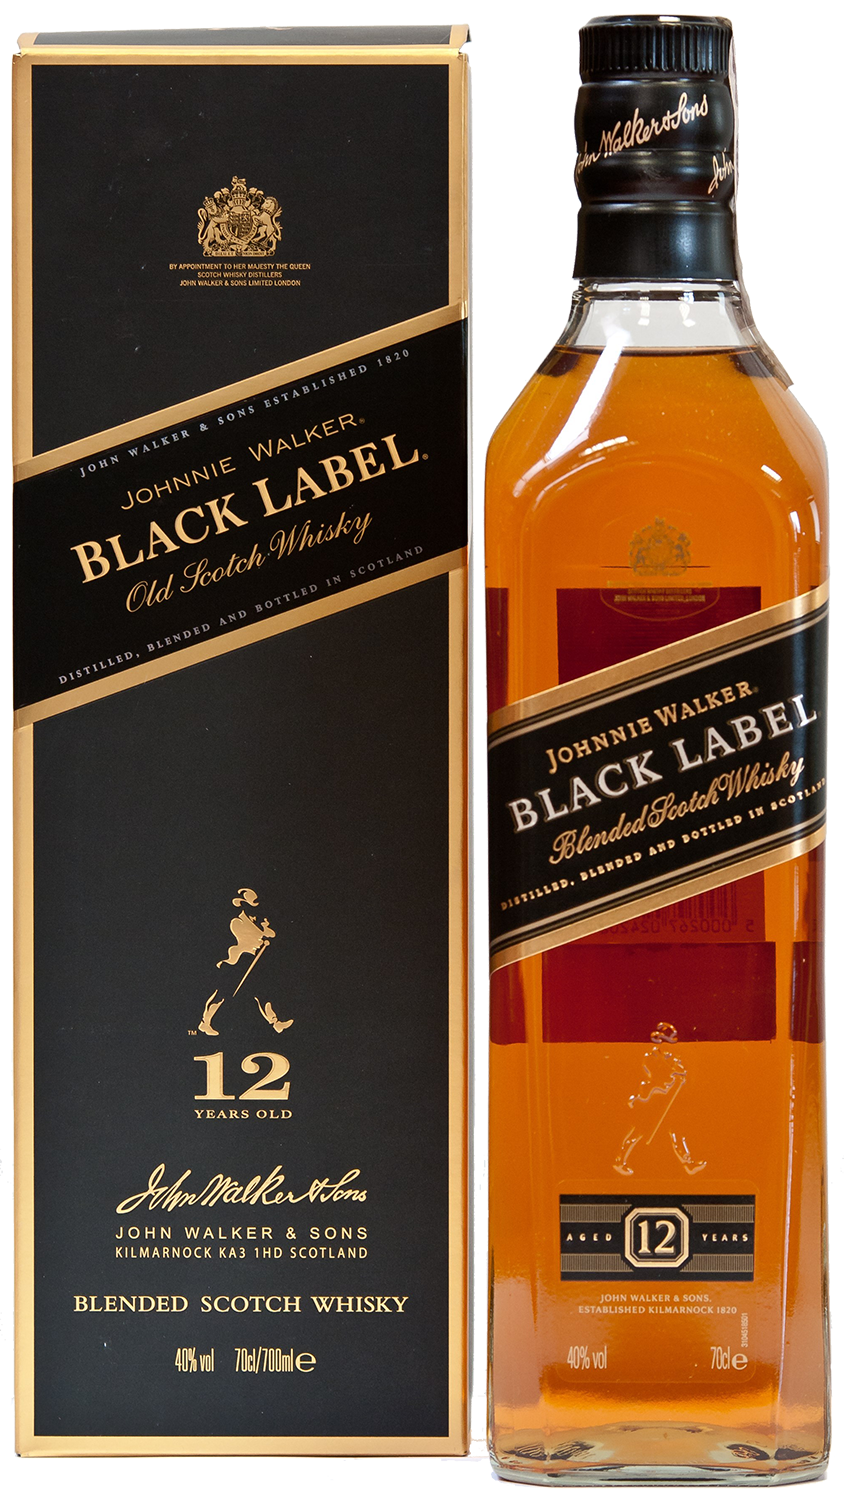 Johnnie Walker Black Label Blended Scotch Whisky (gift box) johnnie walker black label blended scotch whisky gift box with 2 glasses